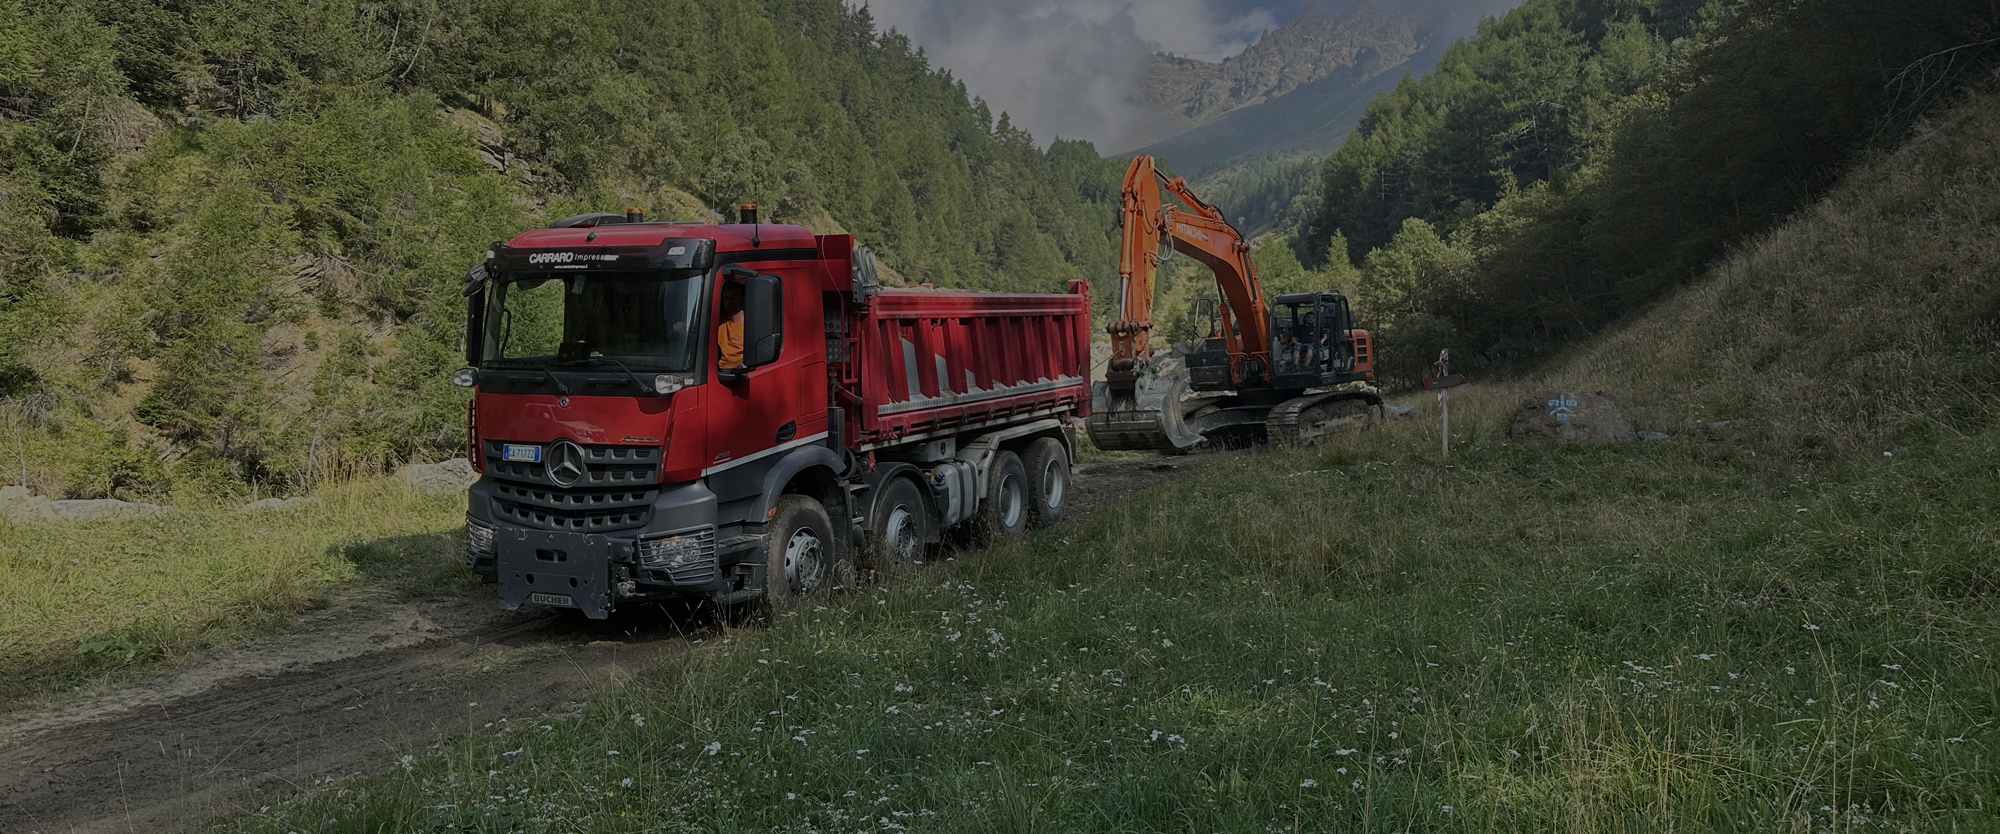 Carraro Impresa costruzioni Trentino-Alto Adige